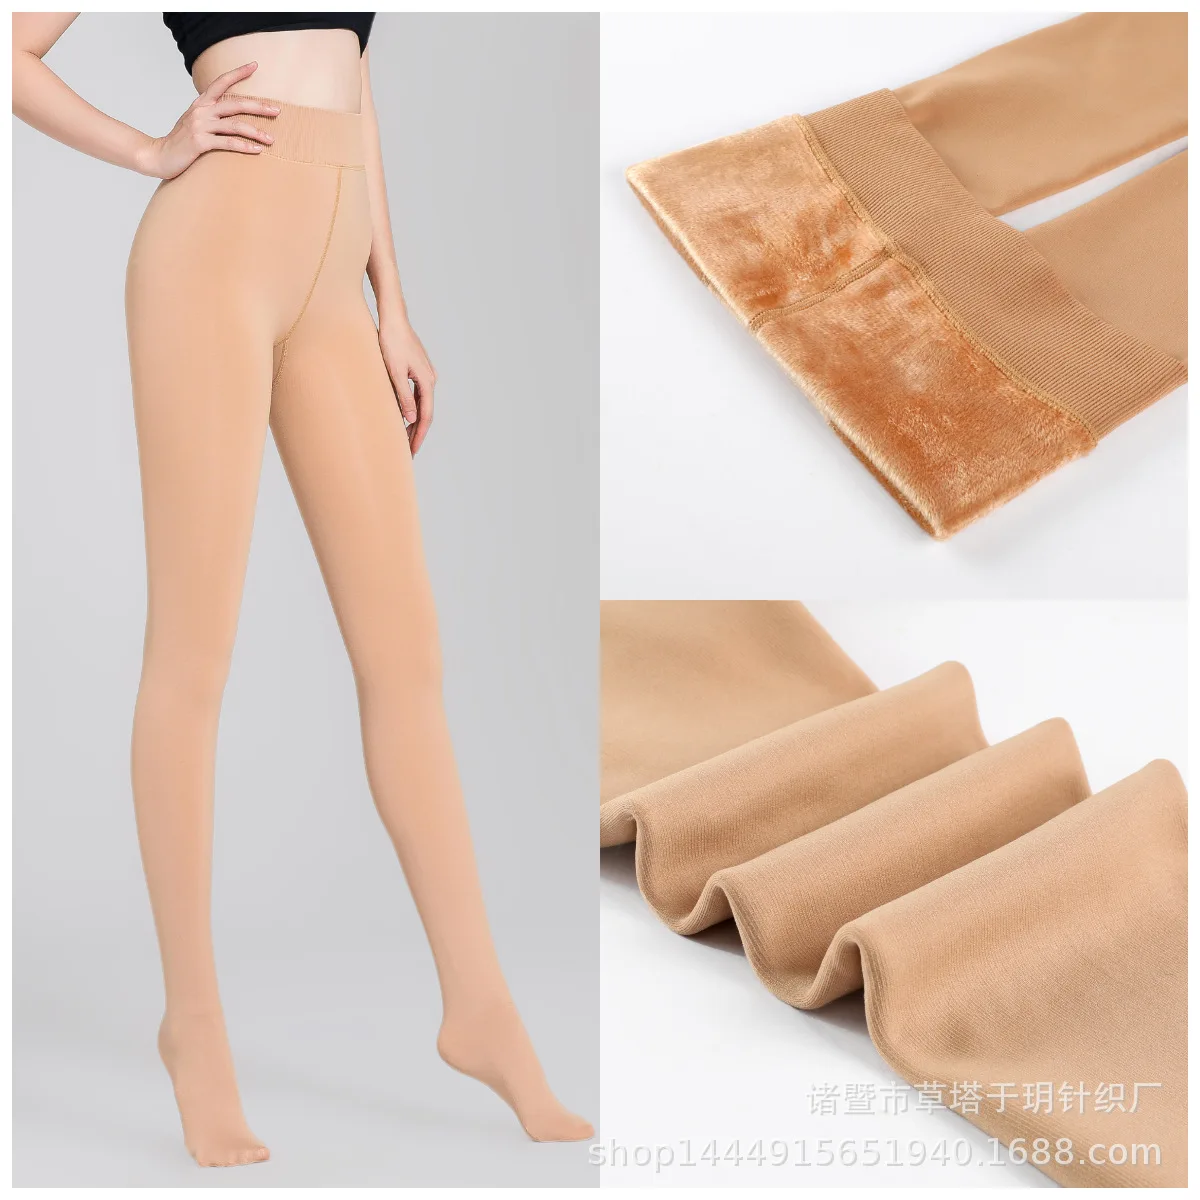 Autumn winter Women Leggings Light Leg PantyHose Velvet Thick Skin Color Stockings tights legging feminina thermal bottoms pants